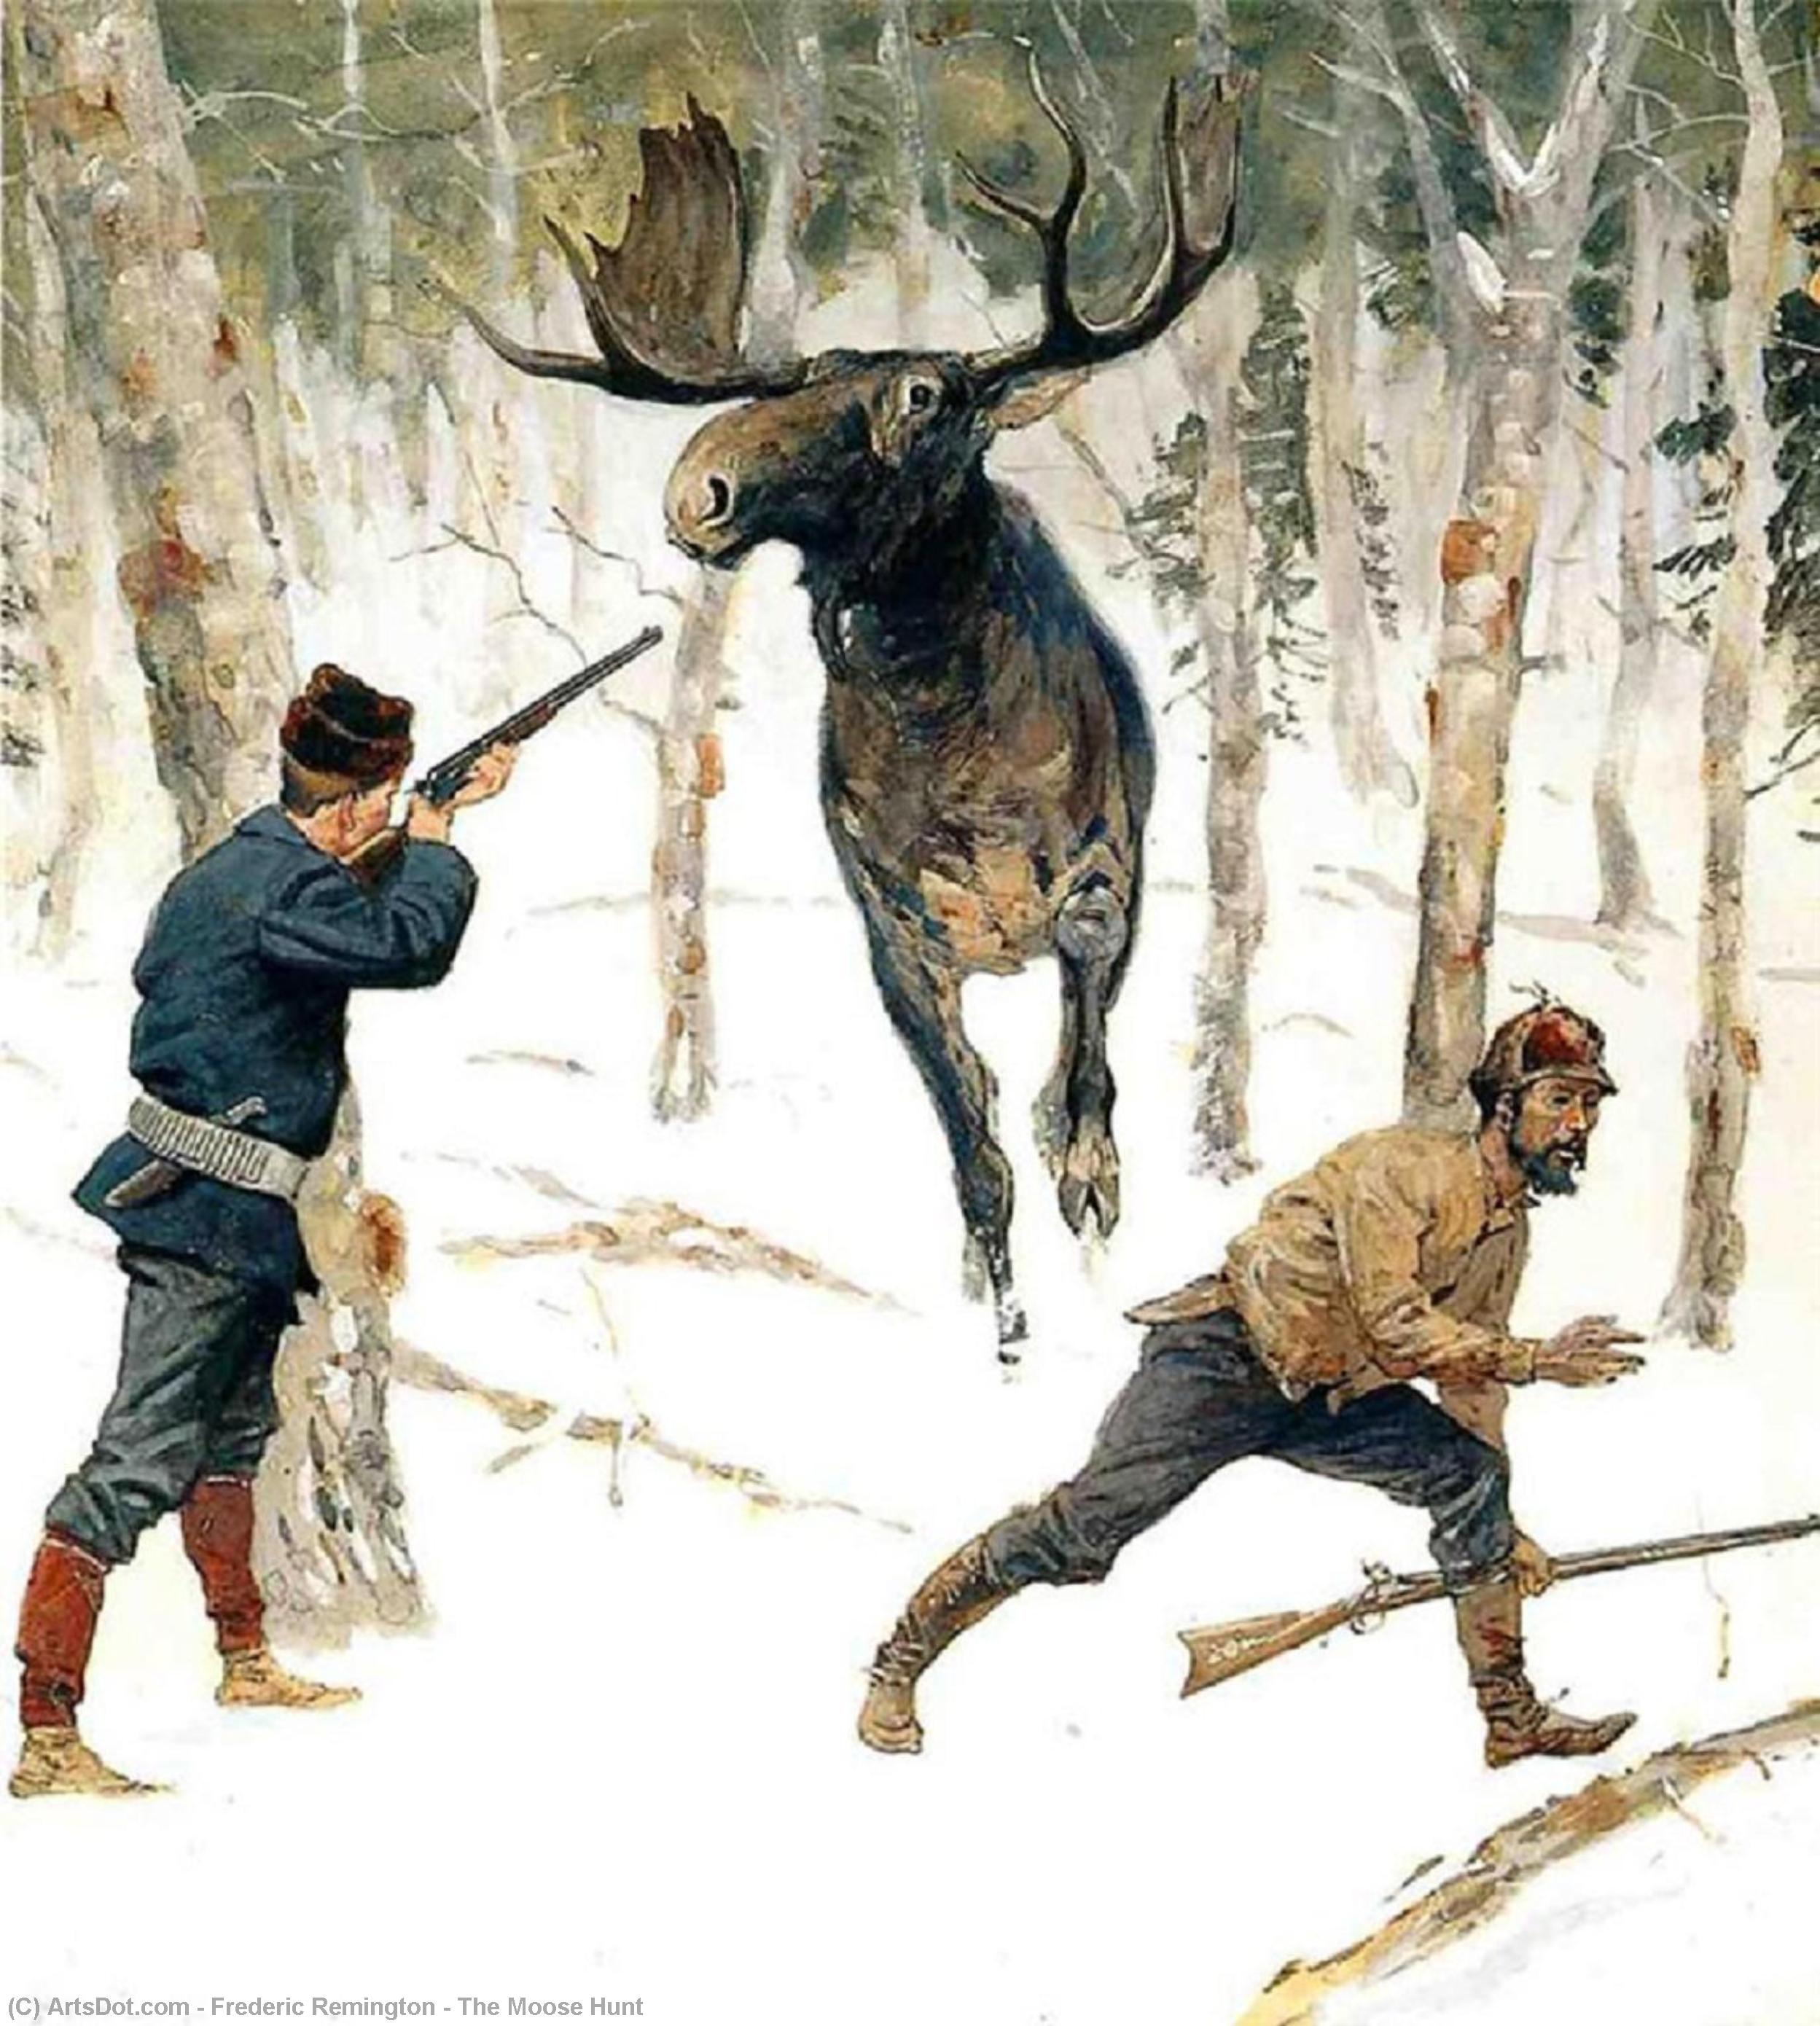 Охота на уставшей. Ремингтон Фредерик картина "охота на лося". Фредерик Ремингтон художник.